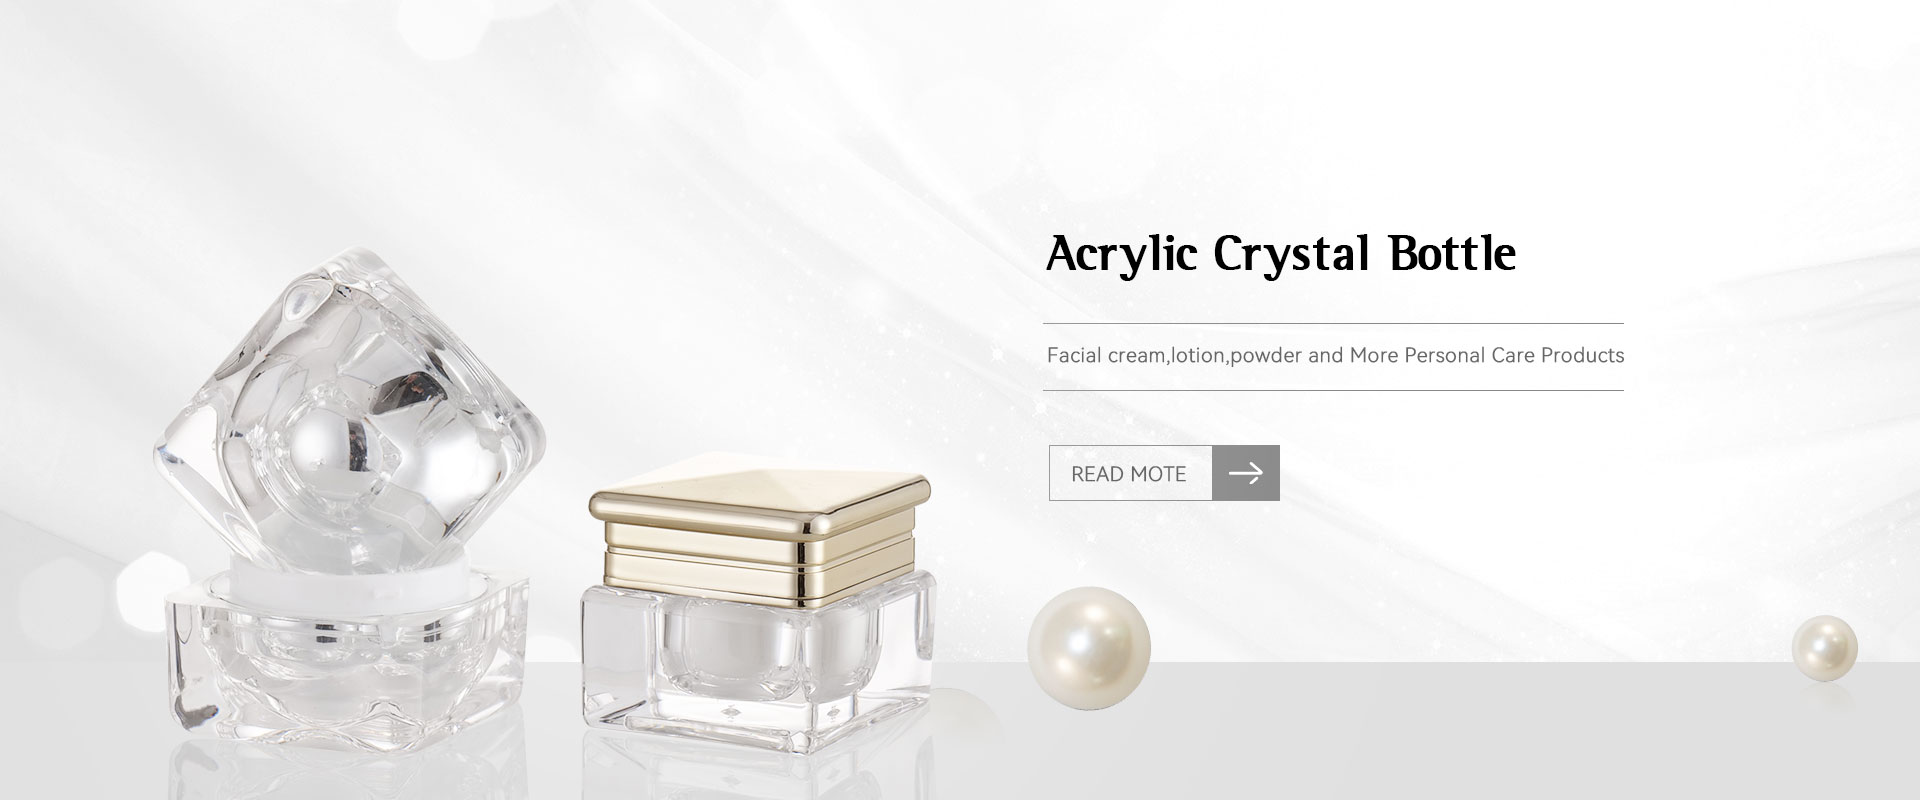 Tillverkare av akrylkristallflaskor